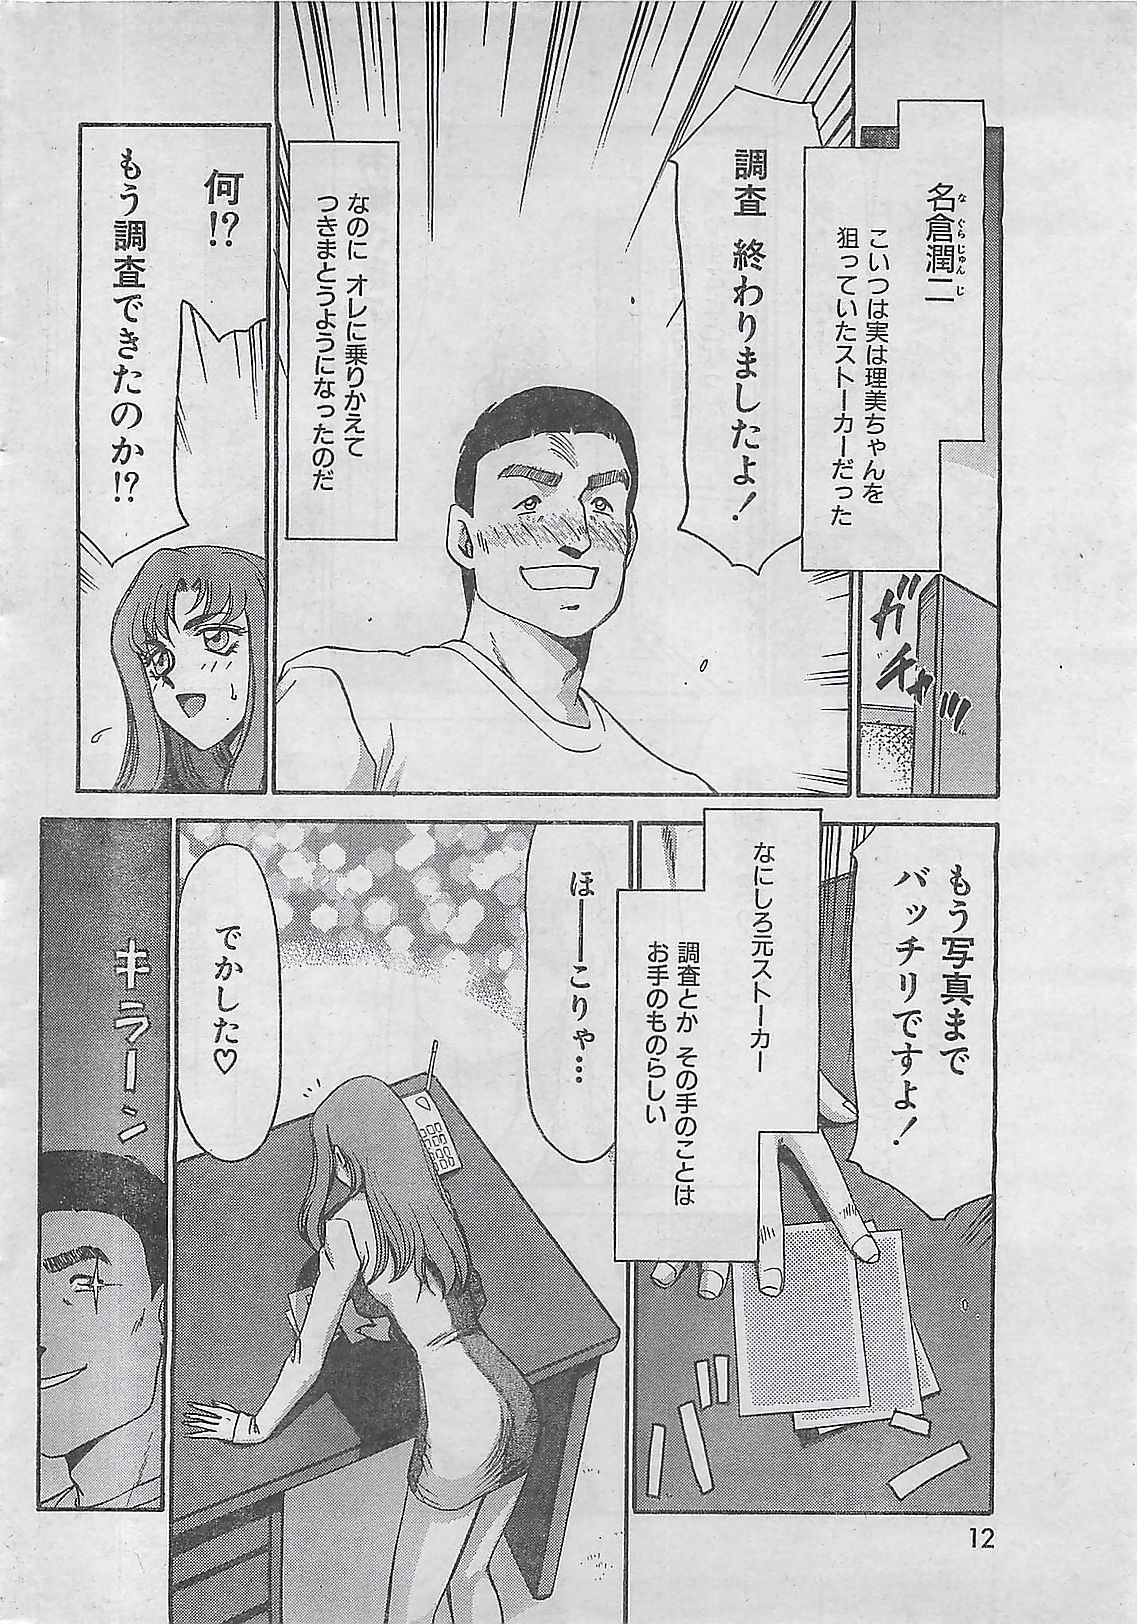 COMIC Zero-Siki No.4 1998-04 (雑誌) COMIC 零式 No.4 1998年04月号